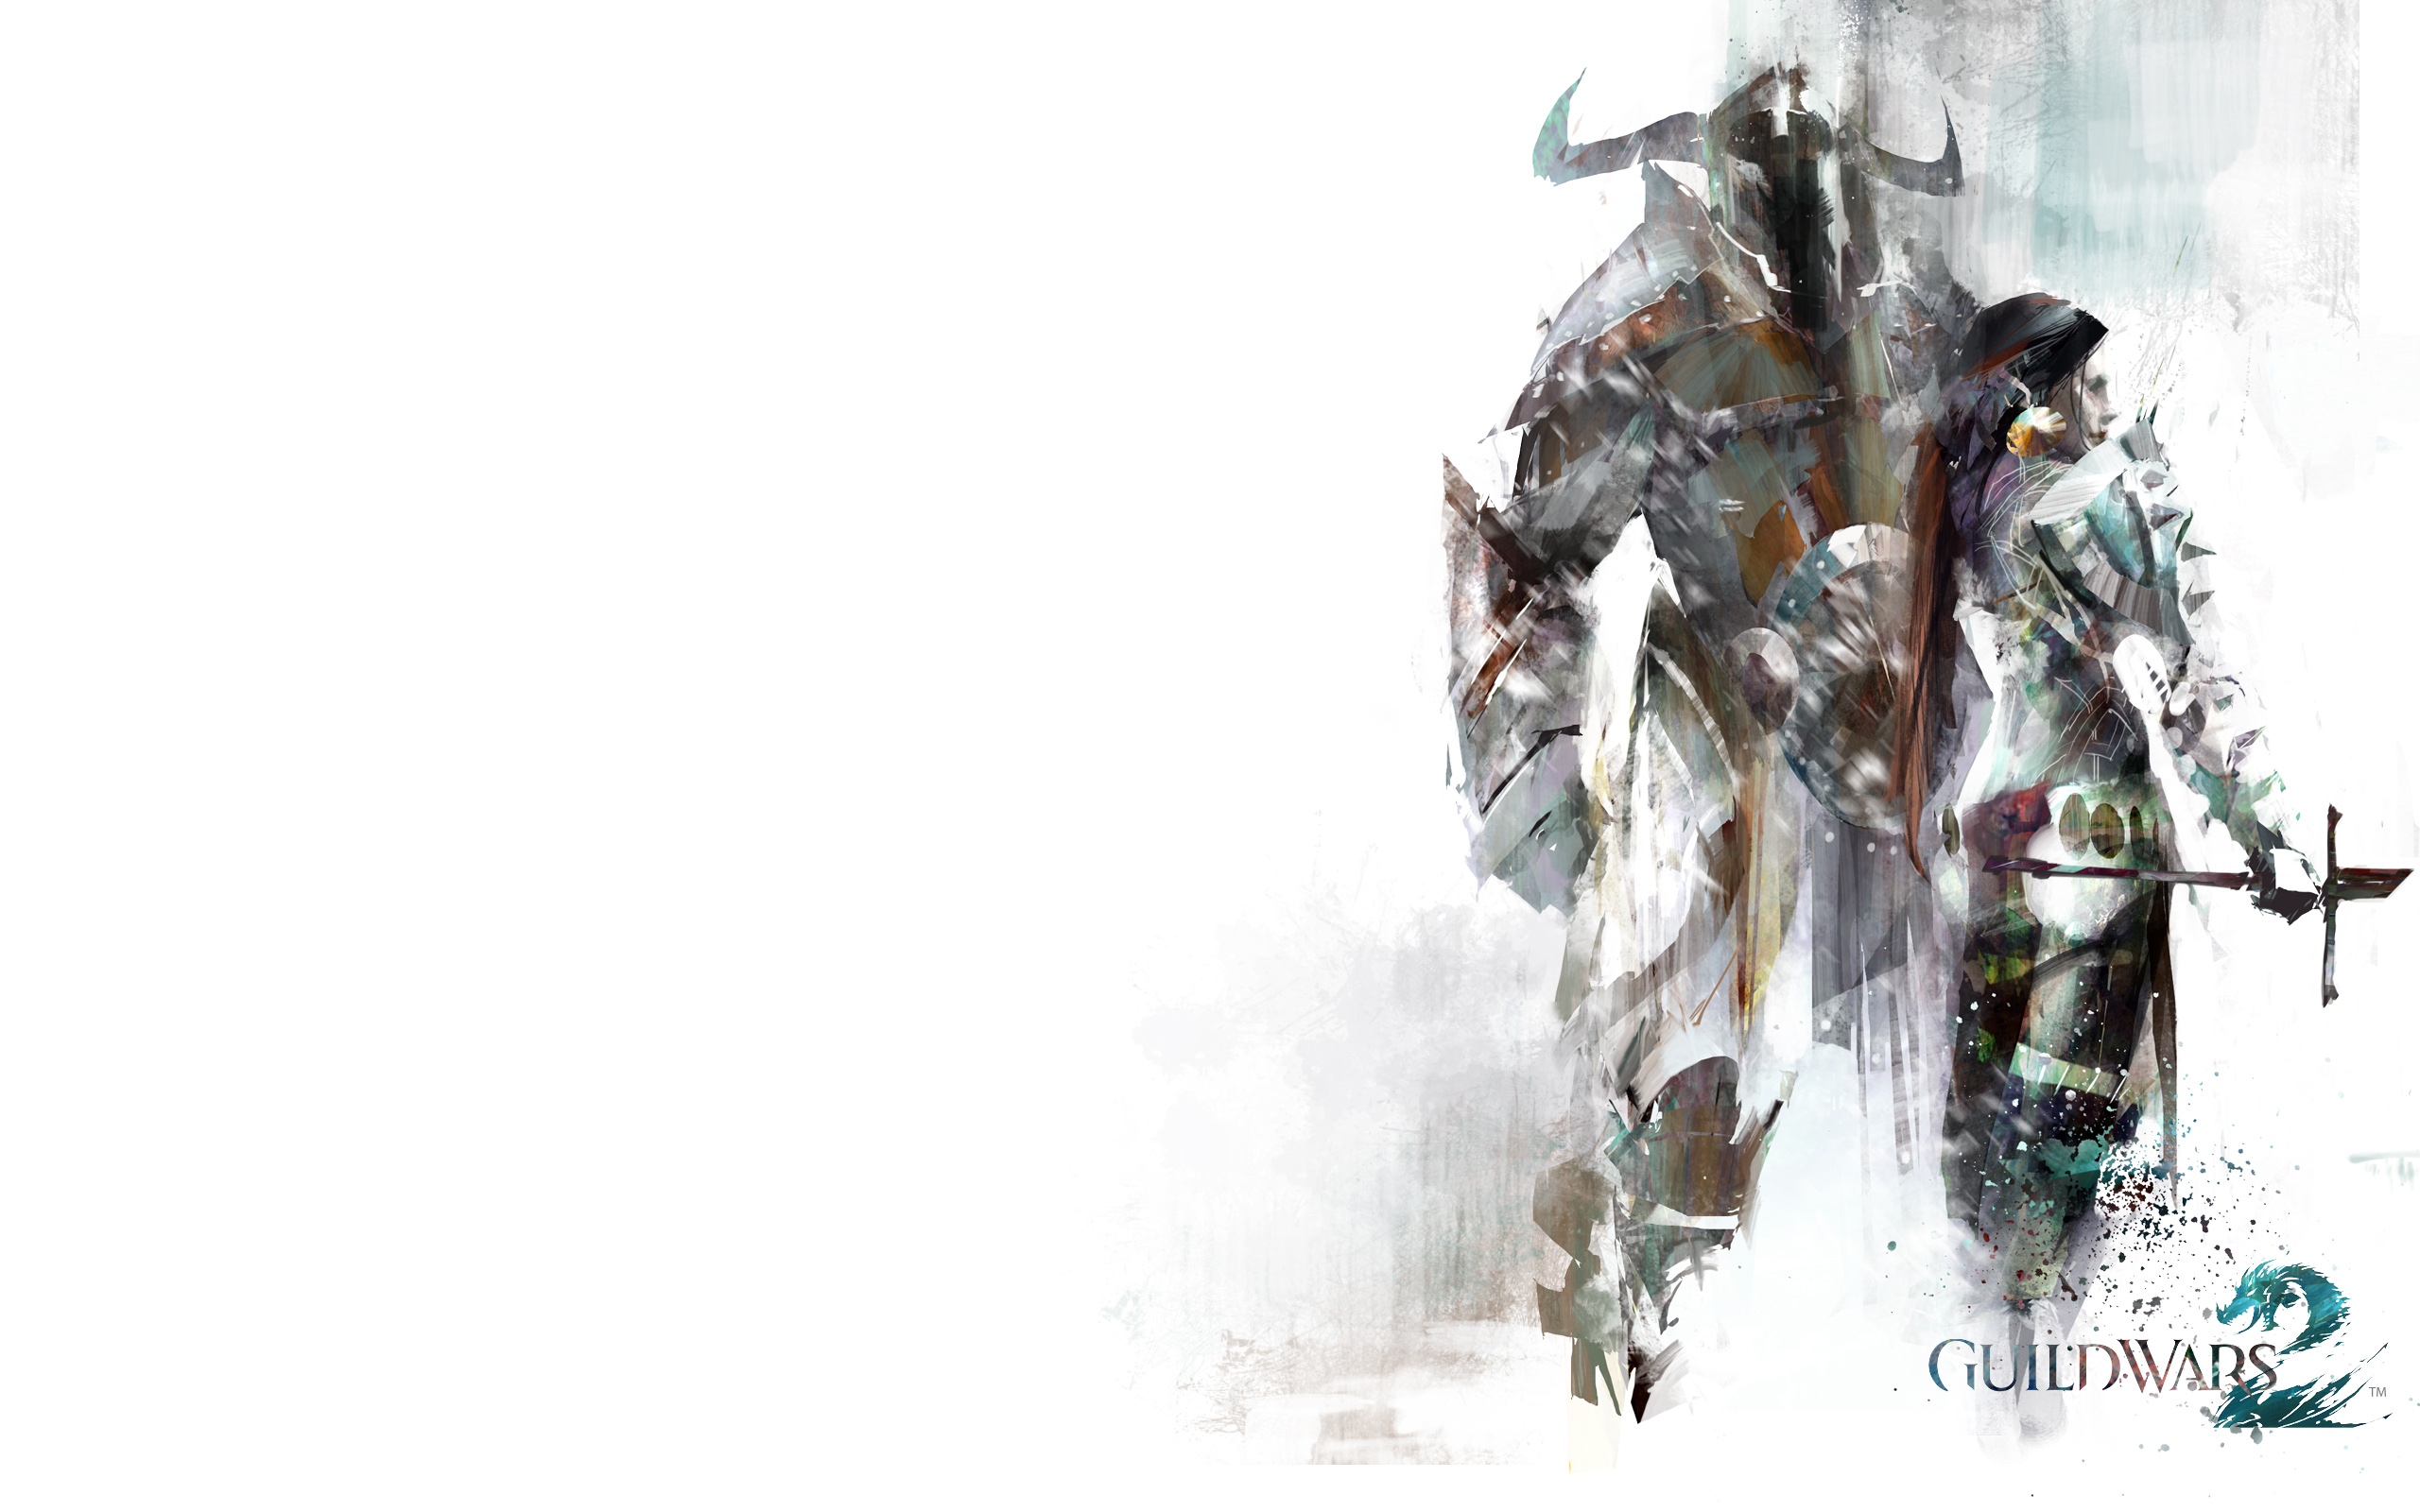 artwork, Guild Wars 2, simple background - desktop wallpaper